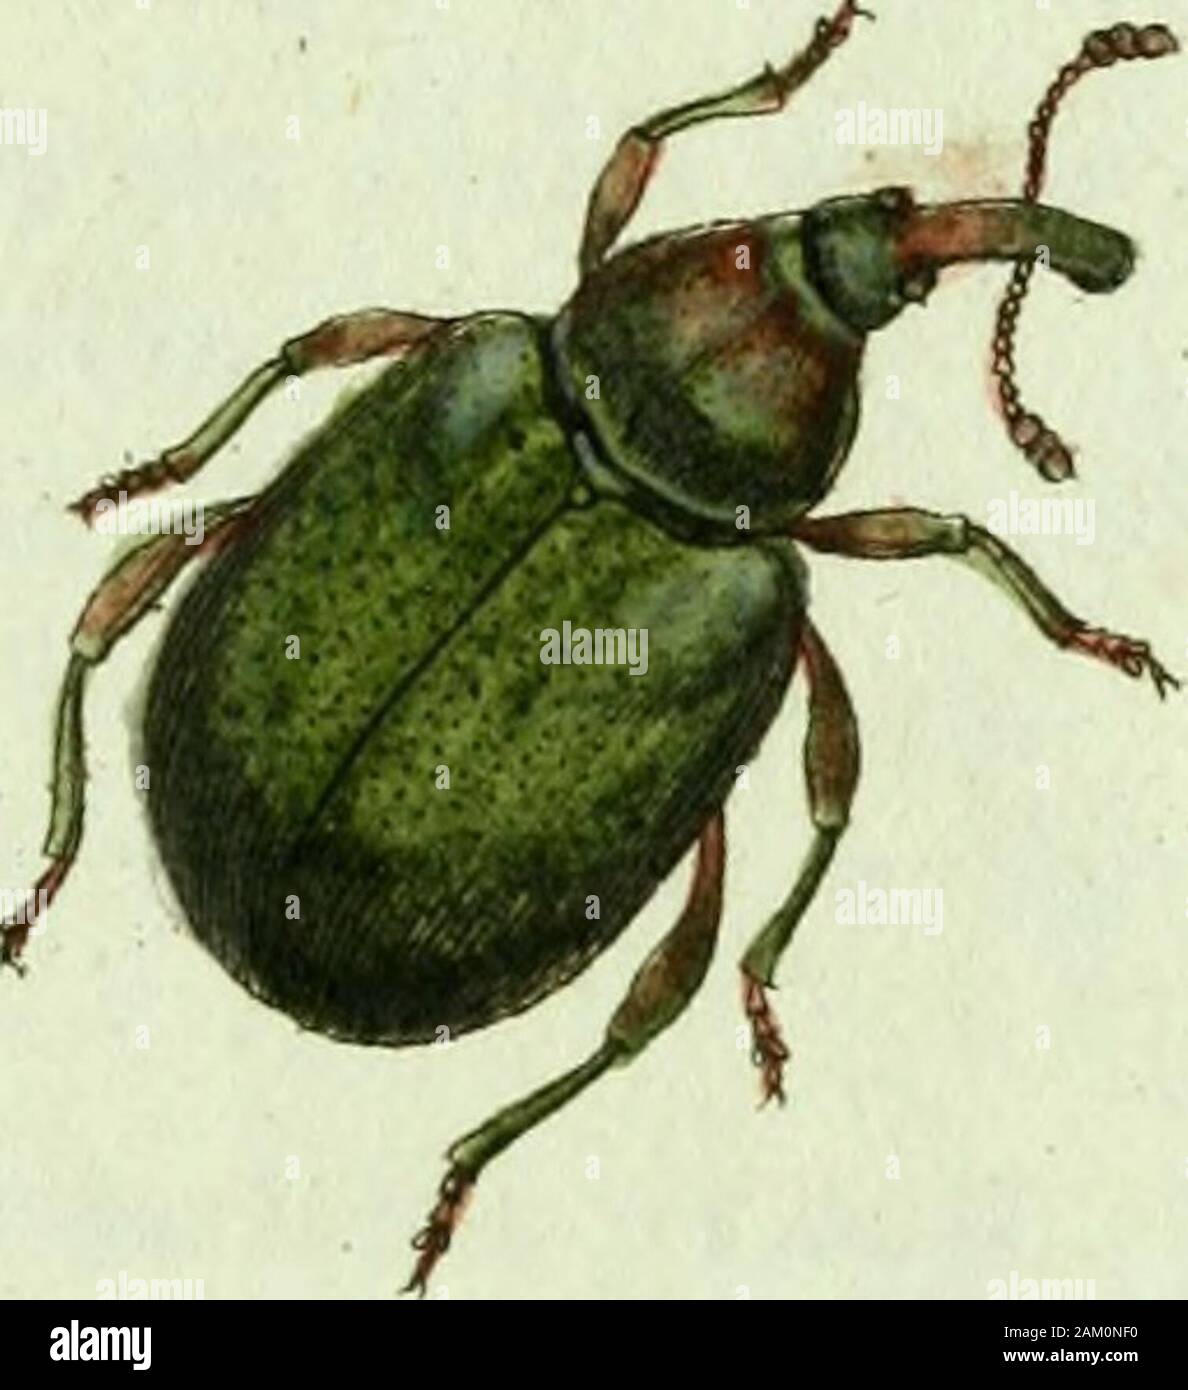 Favnae insectorvm Germanicae initia, oder, Deutschlands Insecten . tisque nigris. Fabric. Ent. Syst. T.II. n.i5. p.387.Curculio Bacchus: longirostris aureus, rostro plantisque nigris. Fabric. Syst. Ent. n. i5. p. i3o. Spec. Ins. T.I. n.22. p. i65. Mant. Ins. T.I. n. 29. p. 99.Curculio Bacchus. Linn. Syst. Nat. n. 38. p. 611. ed. XIII. n. 38. p. 1752.Fihinomacer niger, elytris rnbris, capite thoraceque aureis, proboscid« longitudine corporis. Ocoffr. Ins. T. I. n. 4- p« 270.Curculio rostro longissimo : antennis rectis: corpore villoso snbquadiato purpureo • aurato nitidissimo. Degeer Ins, T. V. Stock Photo